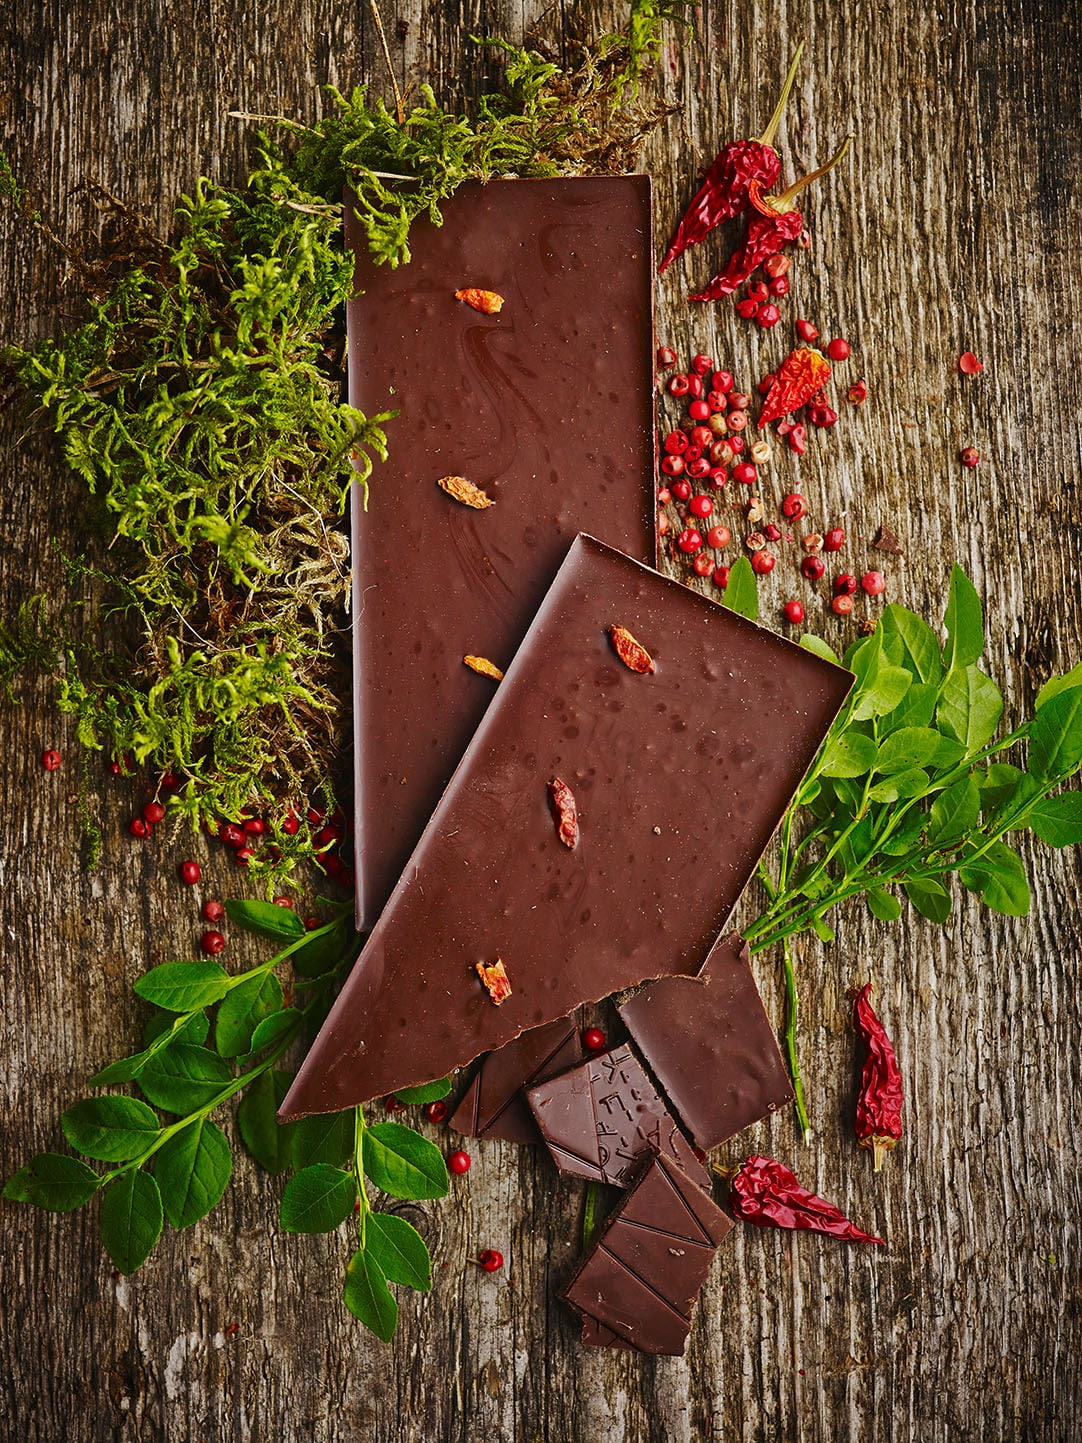 Zartbitter-Schokolade mit feurig-scharfe Note und mit getrockneten Chilischoten dekoriert